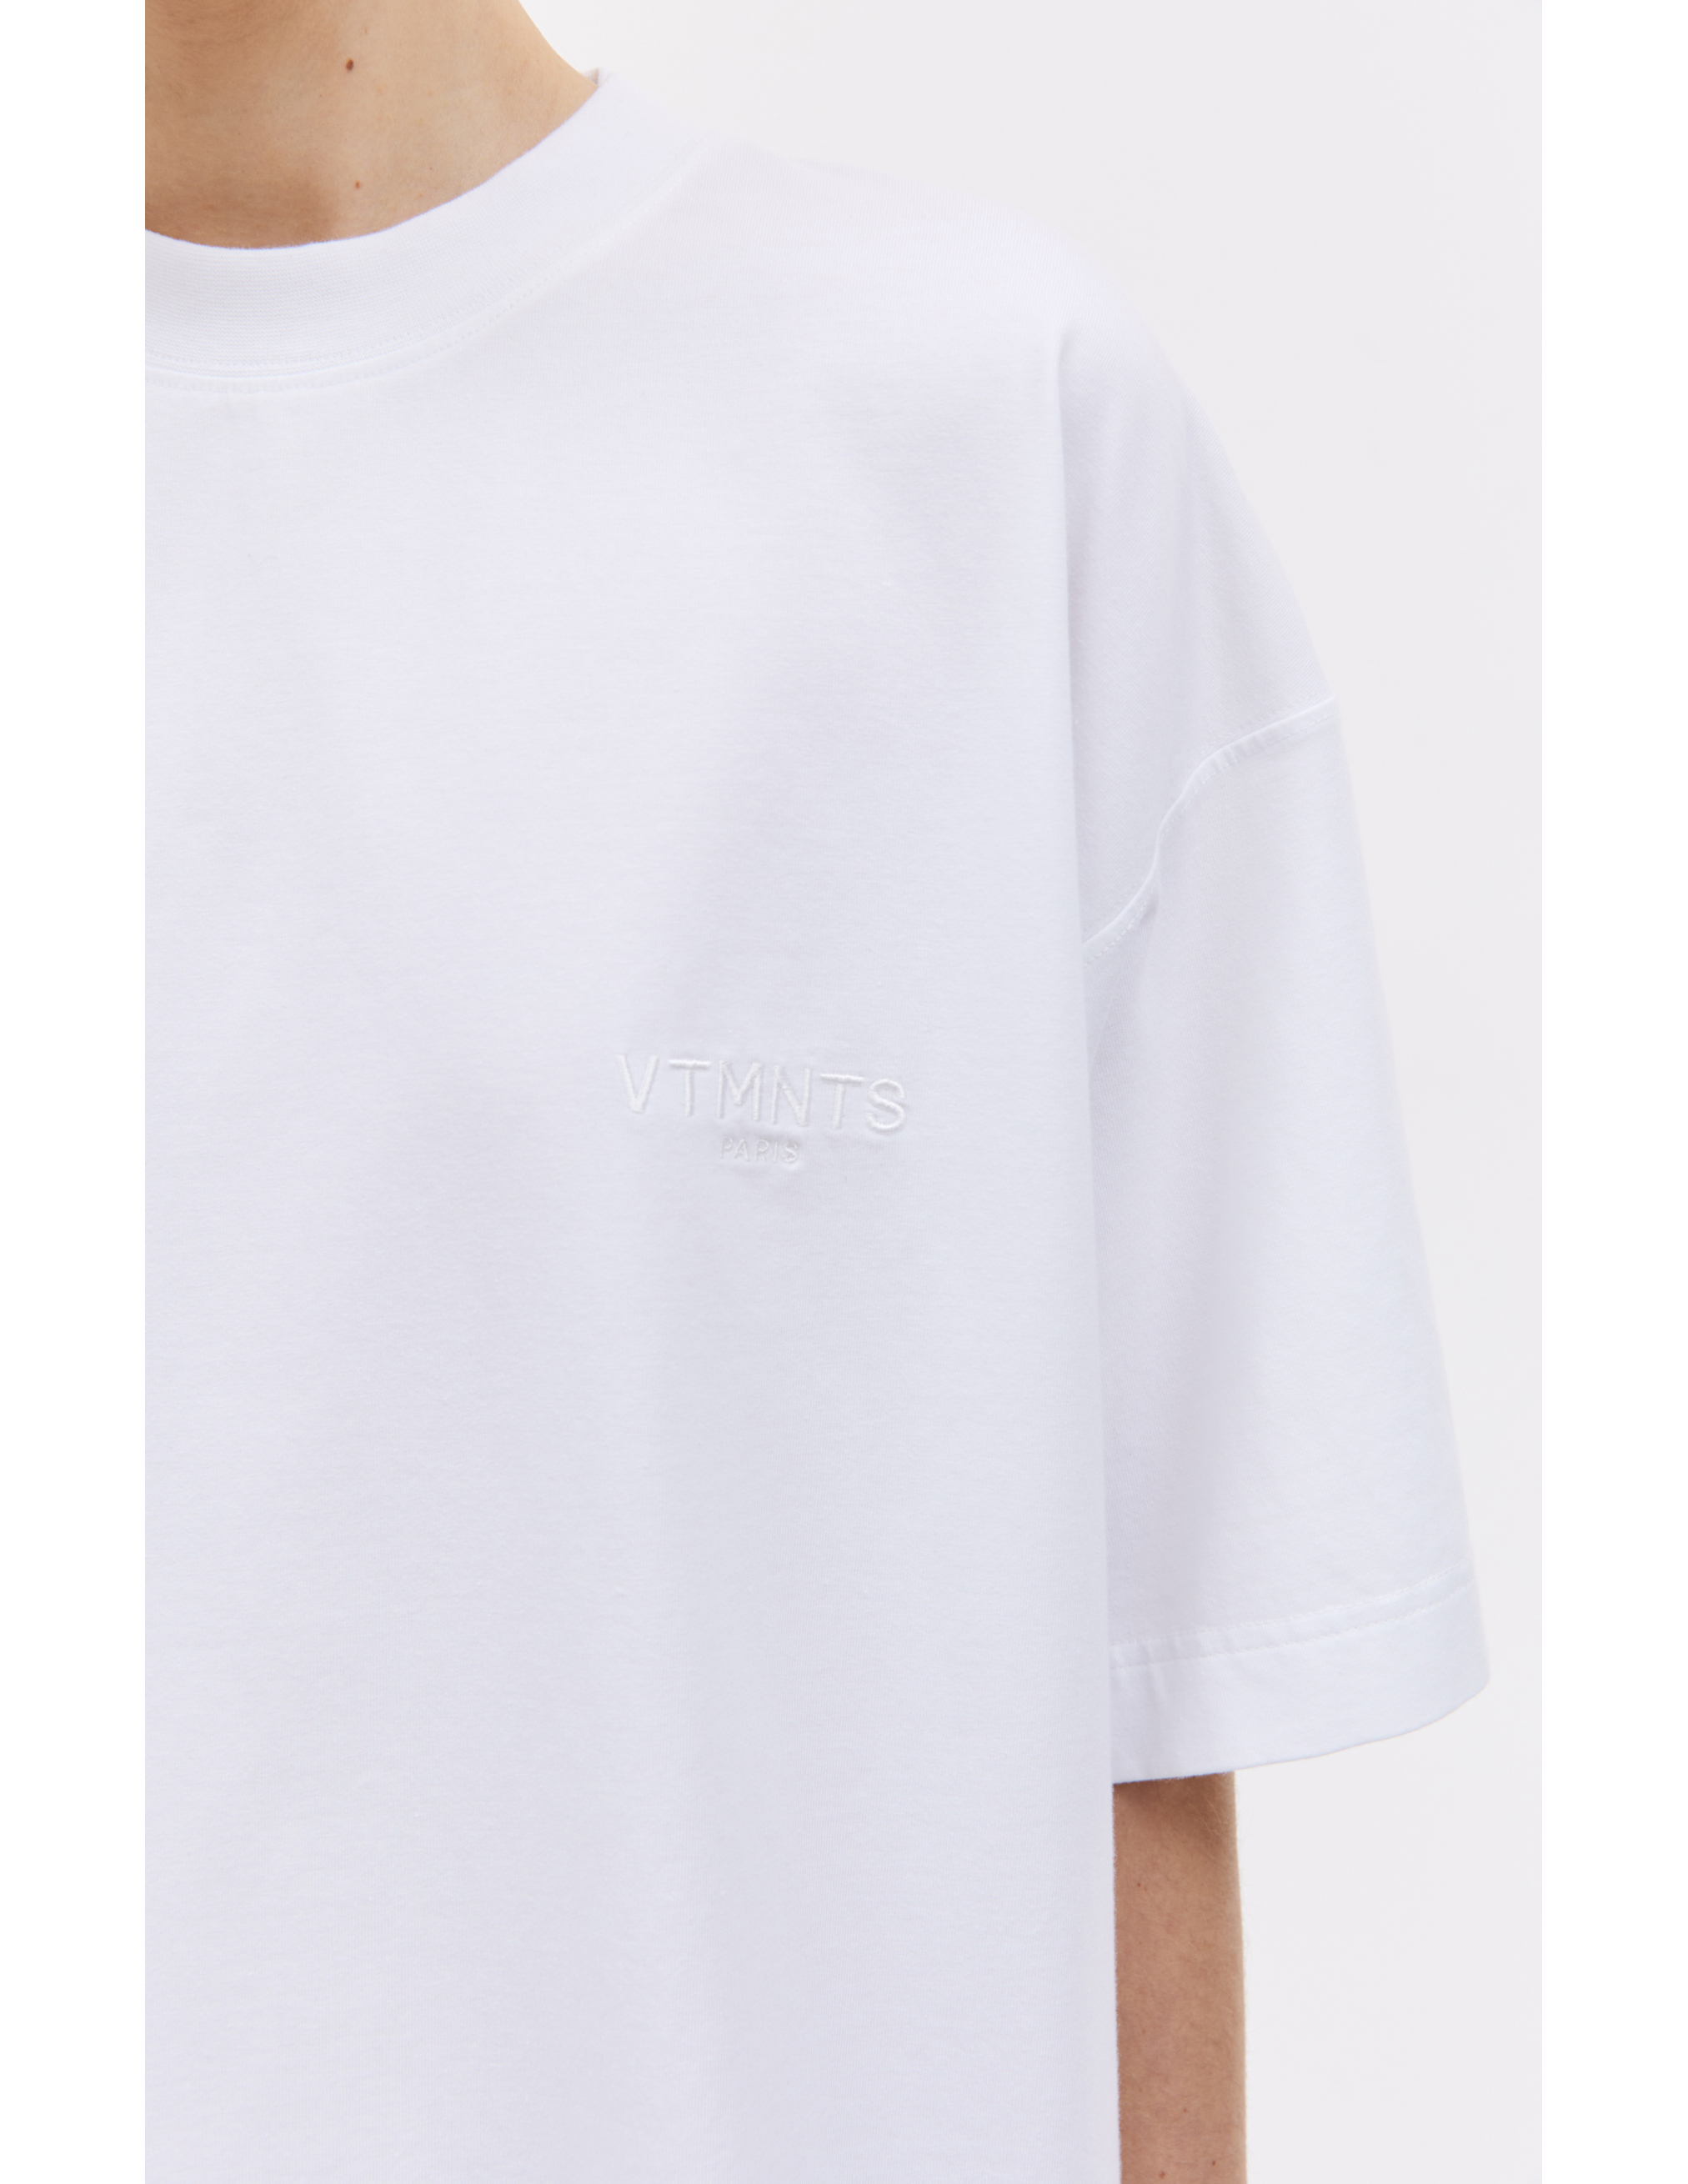 Белая футболка с вышивкой логотипа VTMNTS VL20TR240W/1610, размер L;XL VL20TR240W/1610 - фото 4